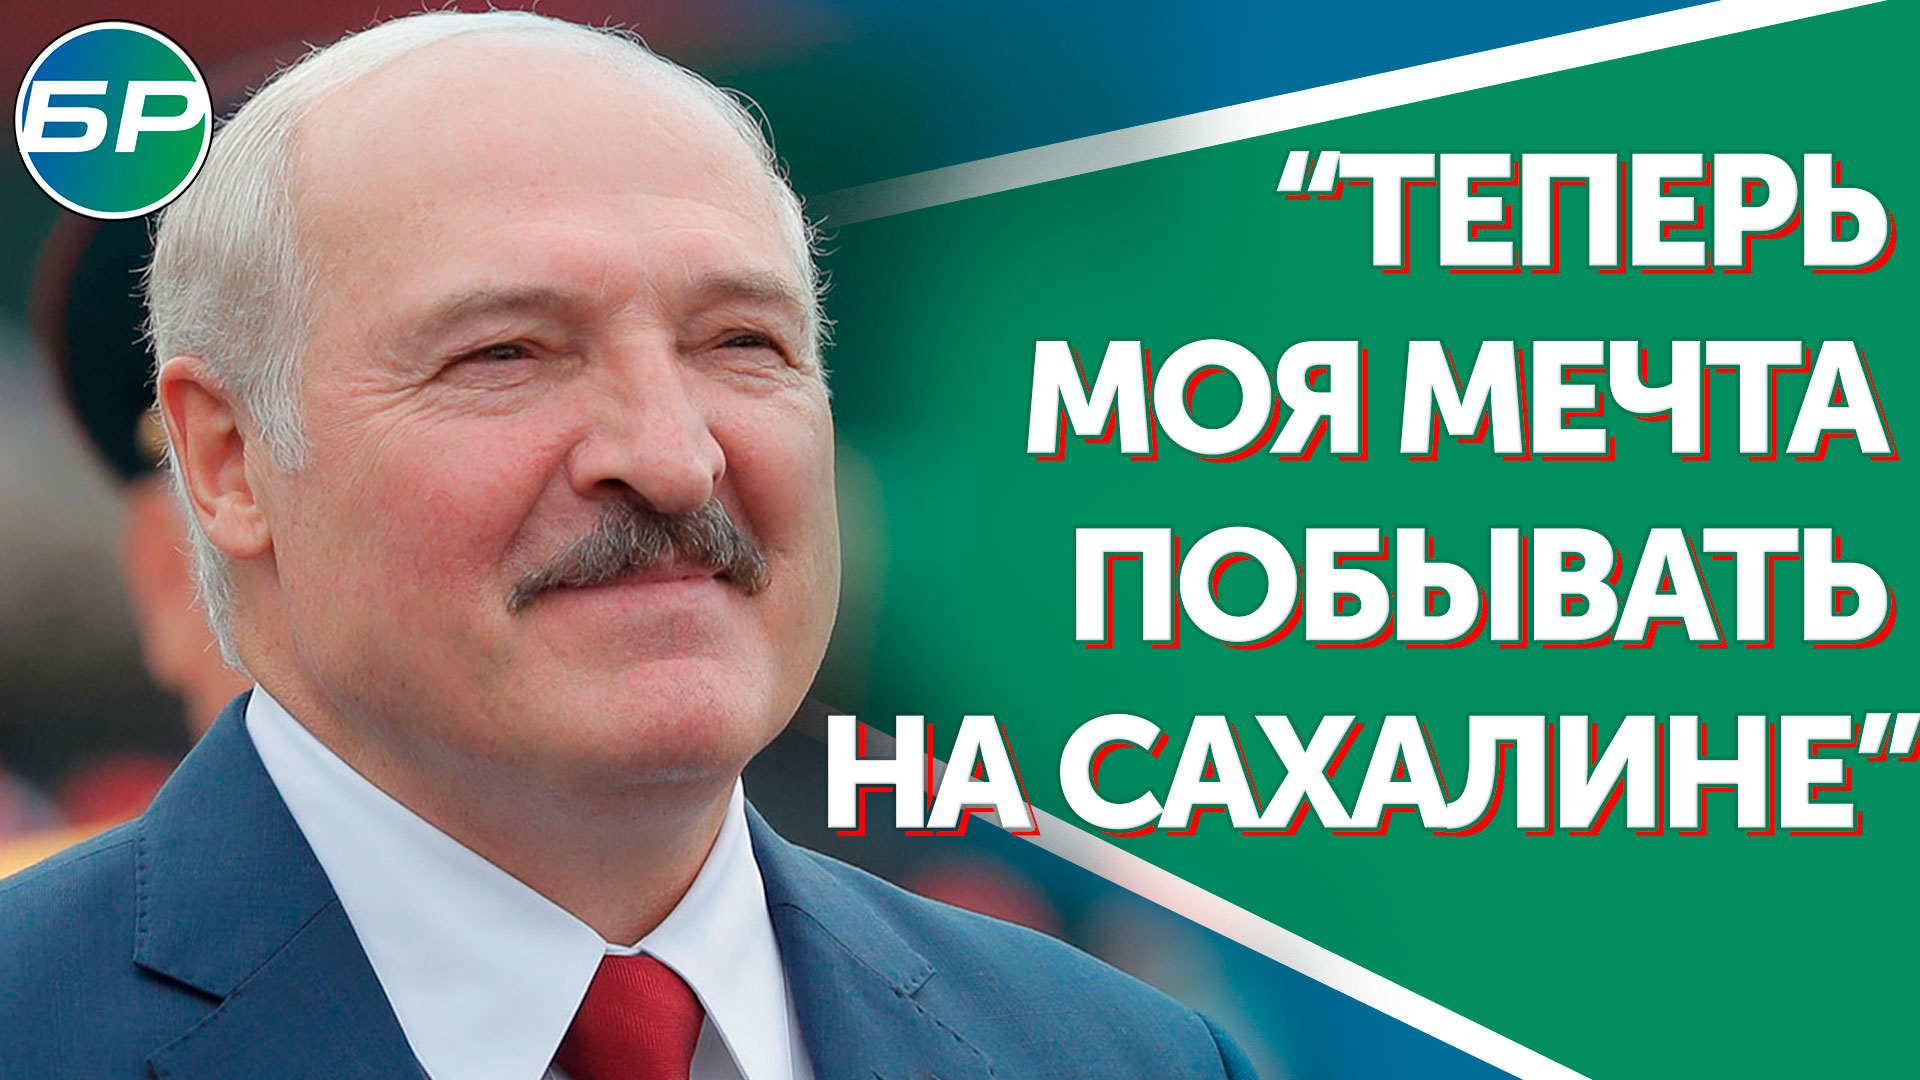 Лукашенко: теперь моя мечта побывать на Сахалине